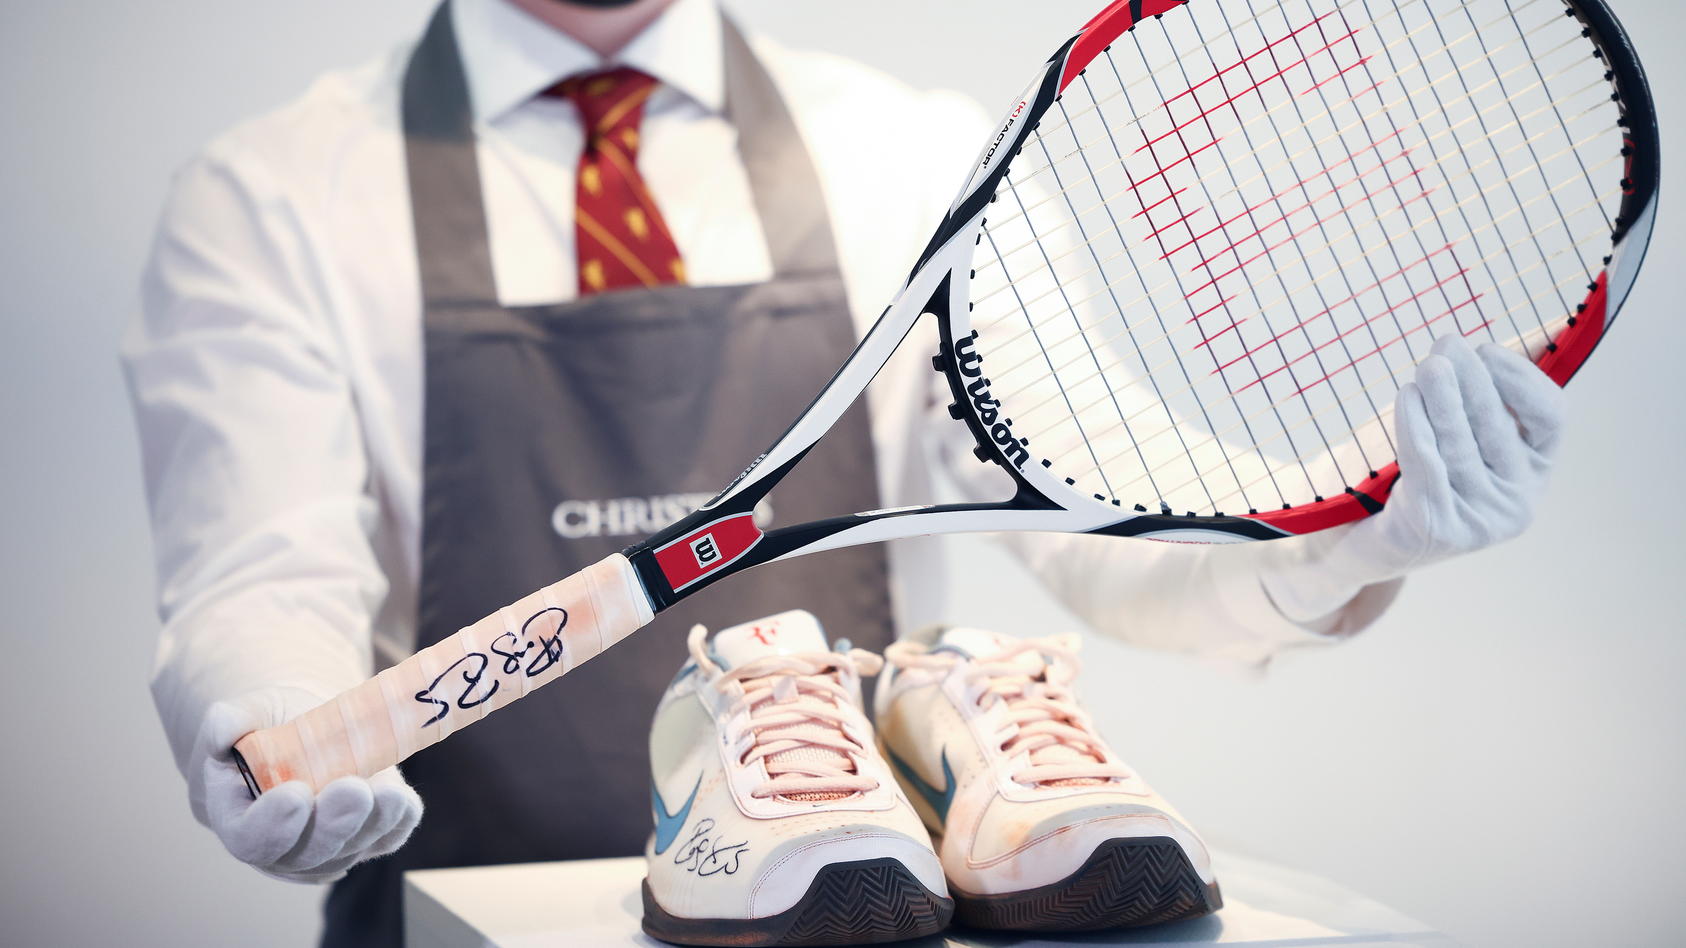 Roger Federer Versteigert Seine Tennis Ausrustung Fur Einen Guten Zweck